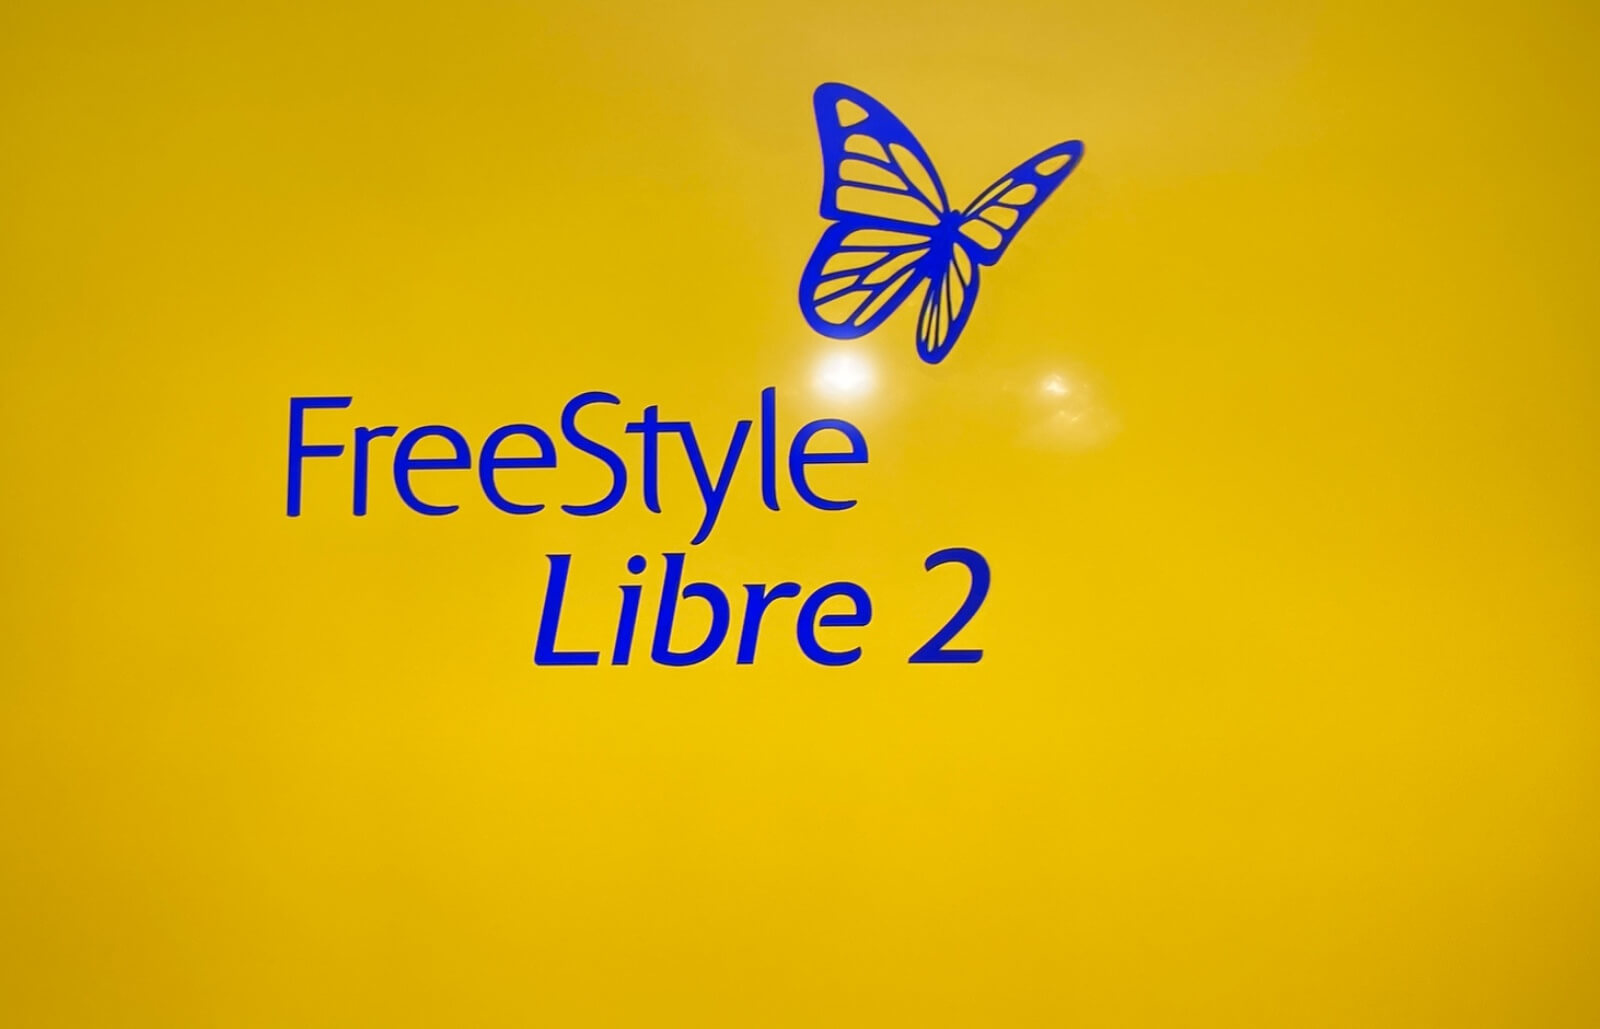 Freestyle libre 2 